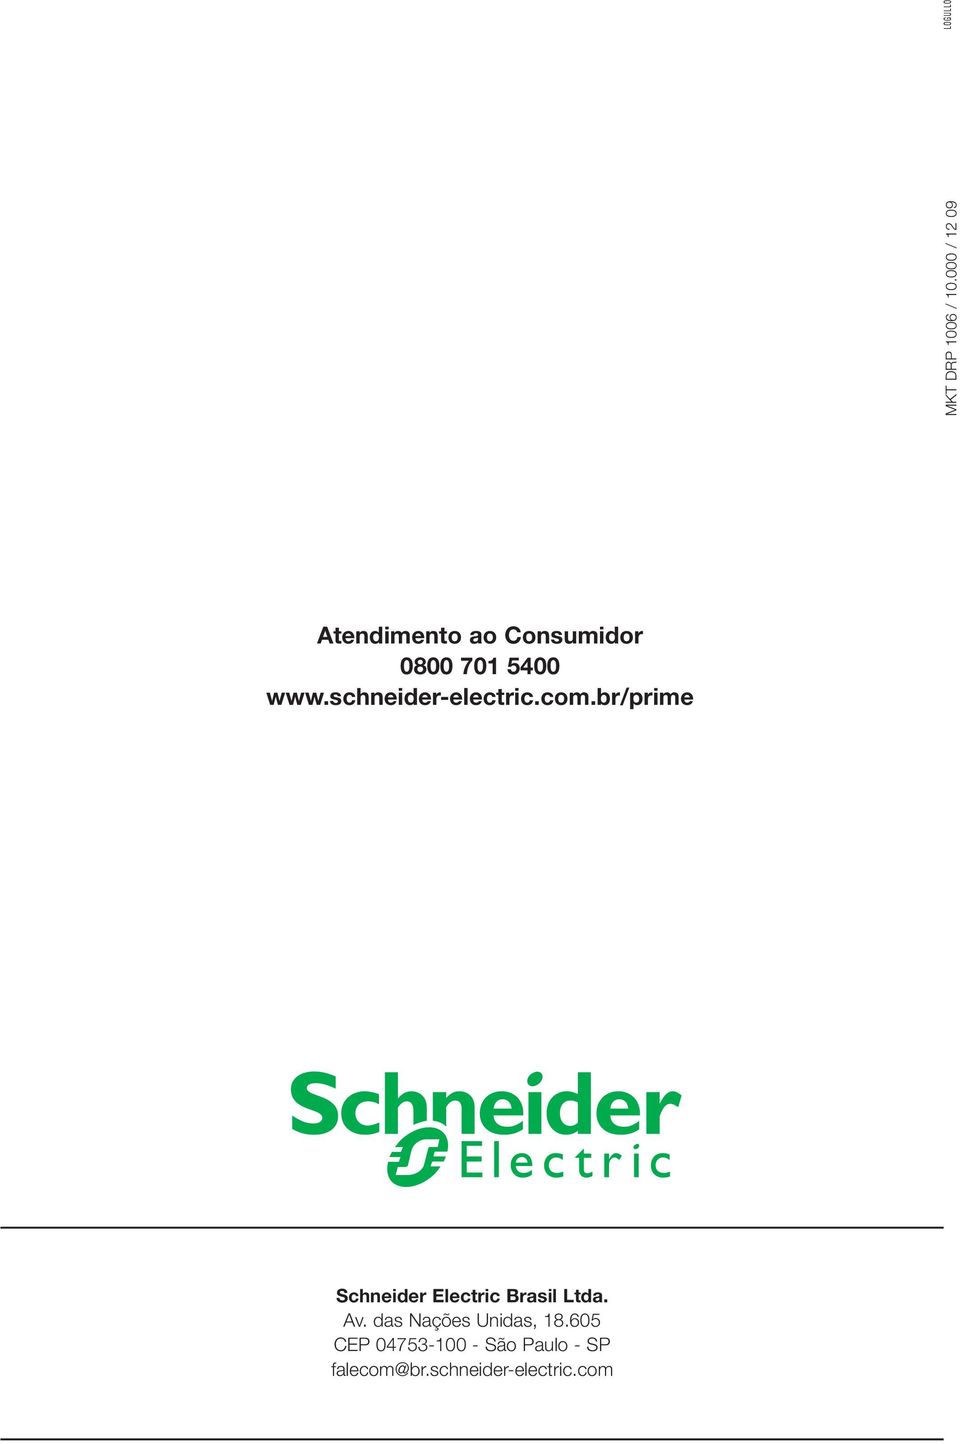 schneider-electric.com.